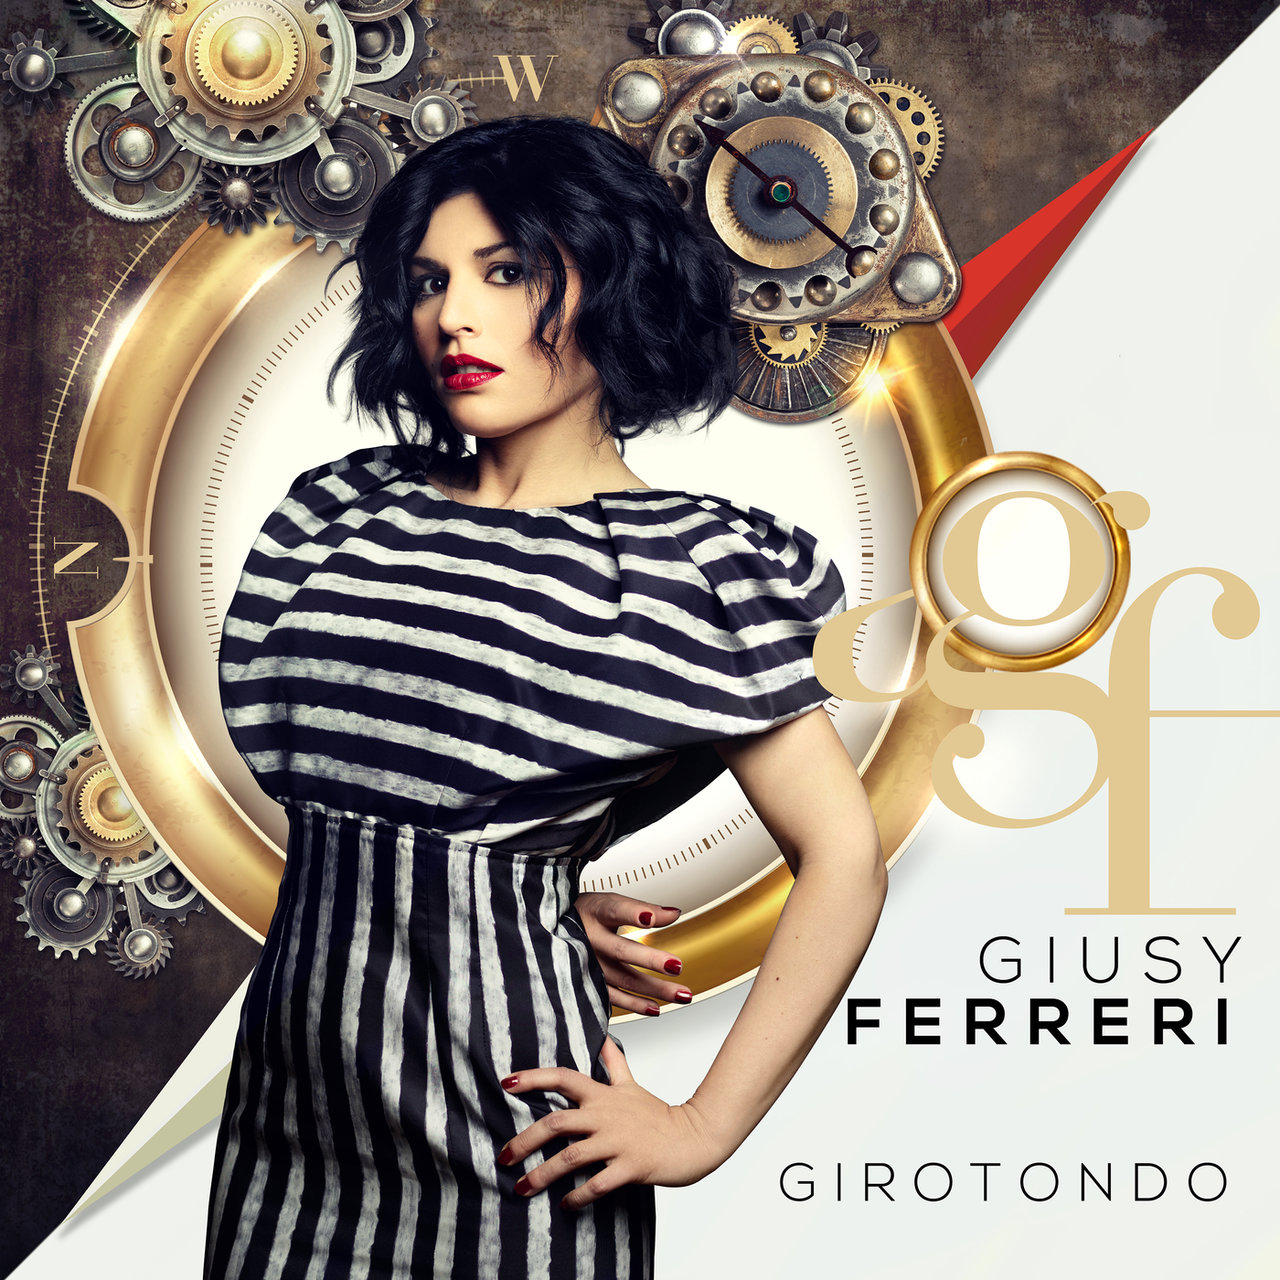 Giusy Ferreri — Immaginami cover artwork